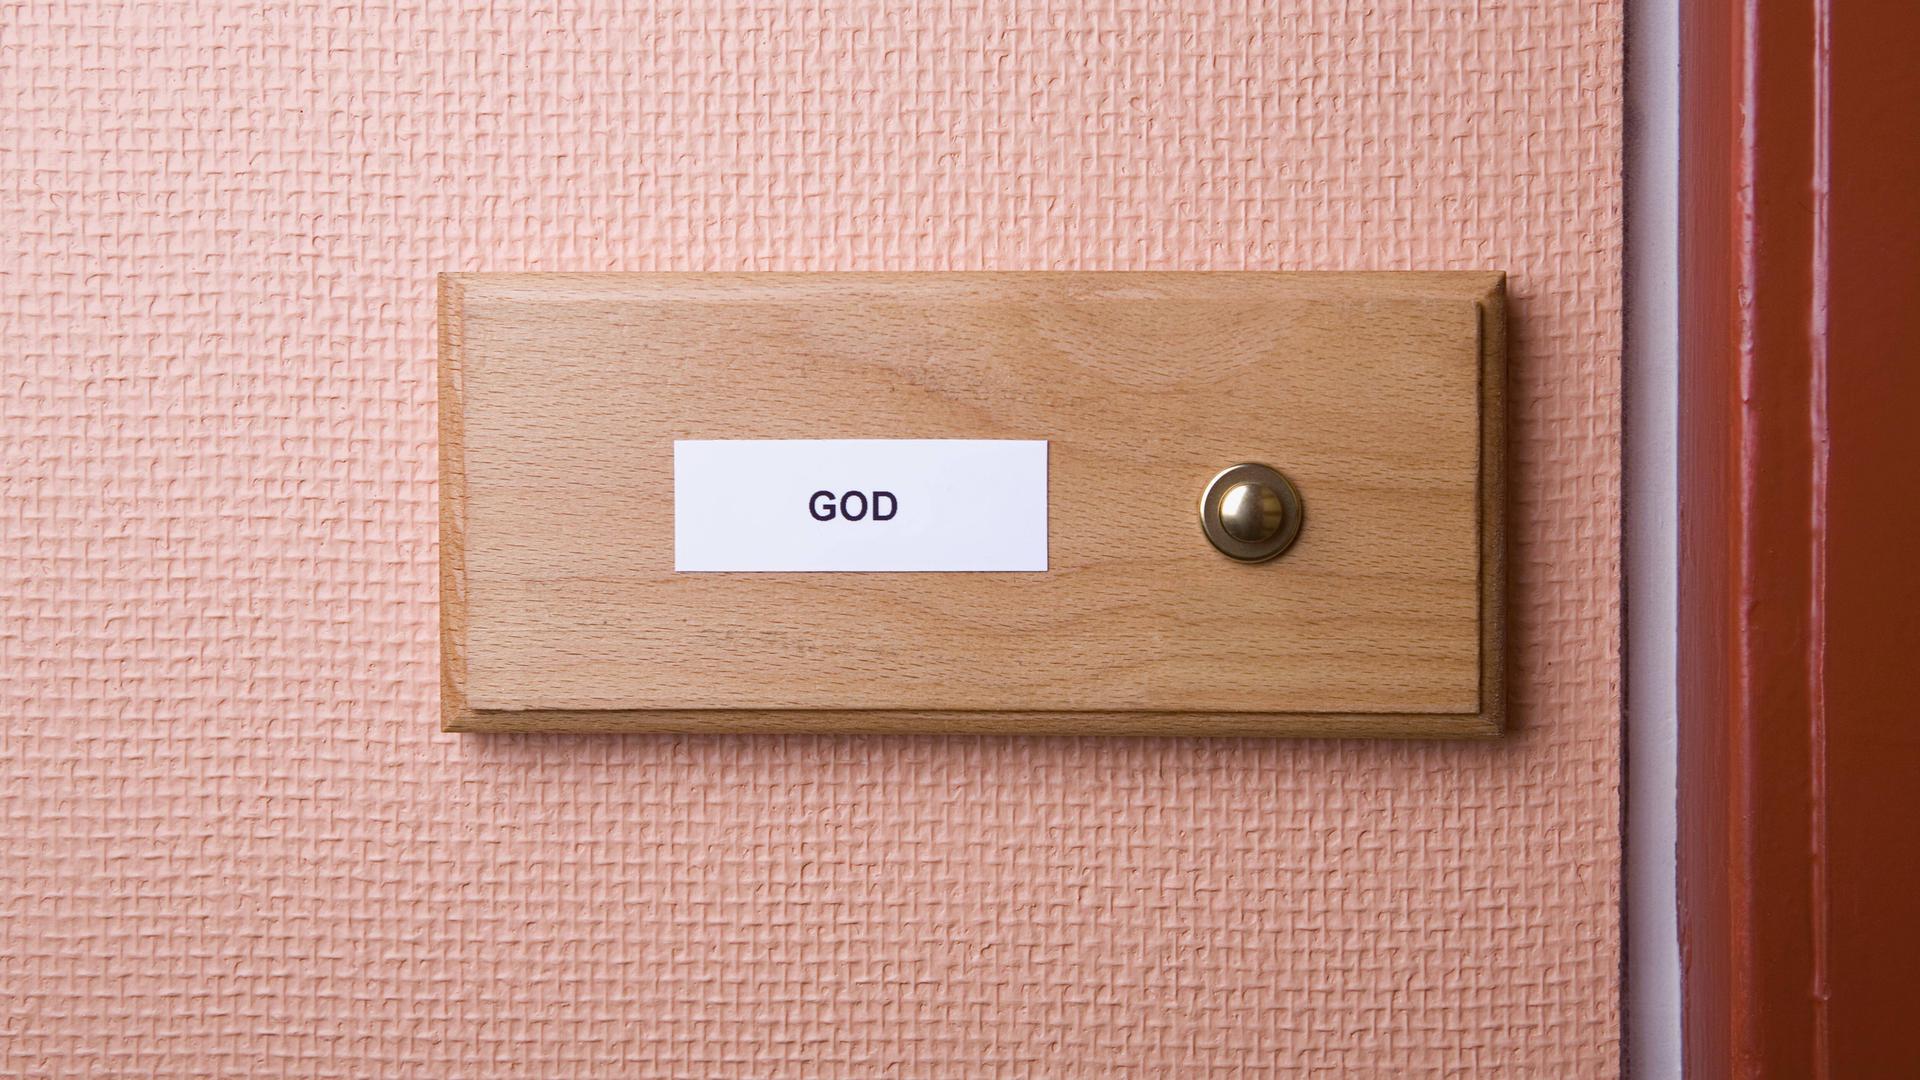 Der Name "God" steht auf einem Klingelschild.